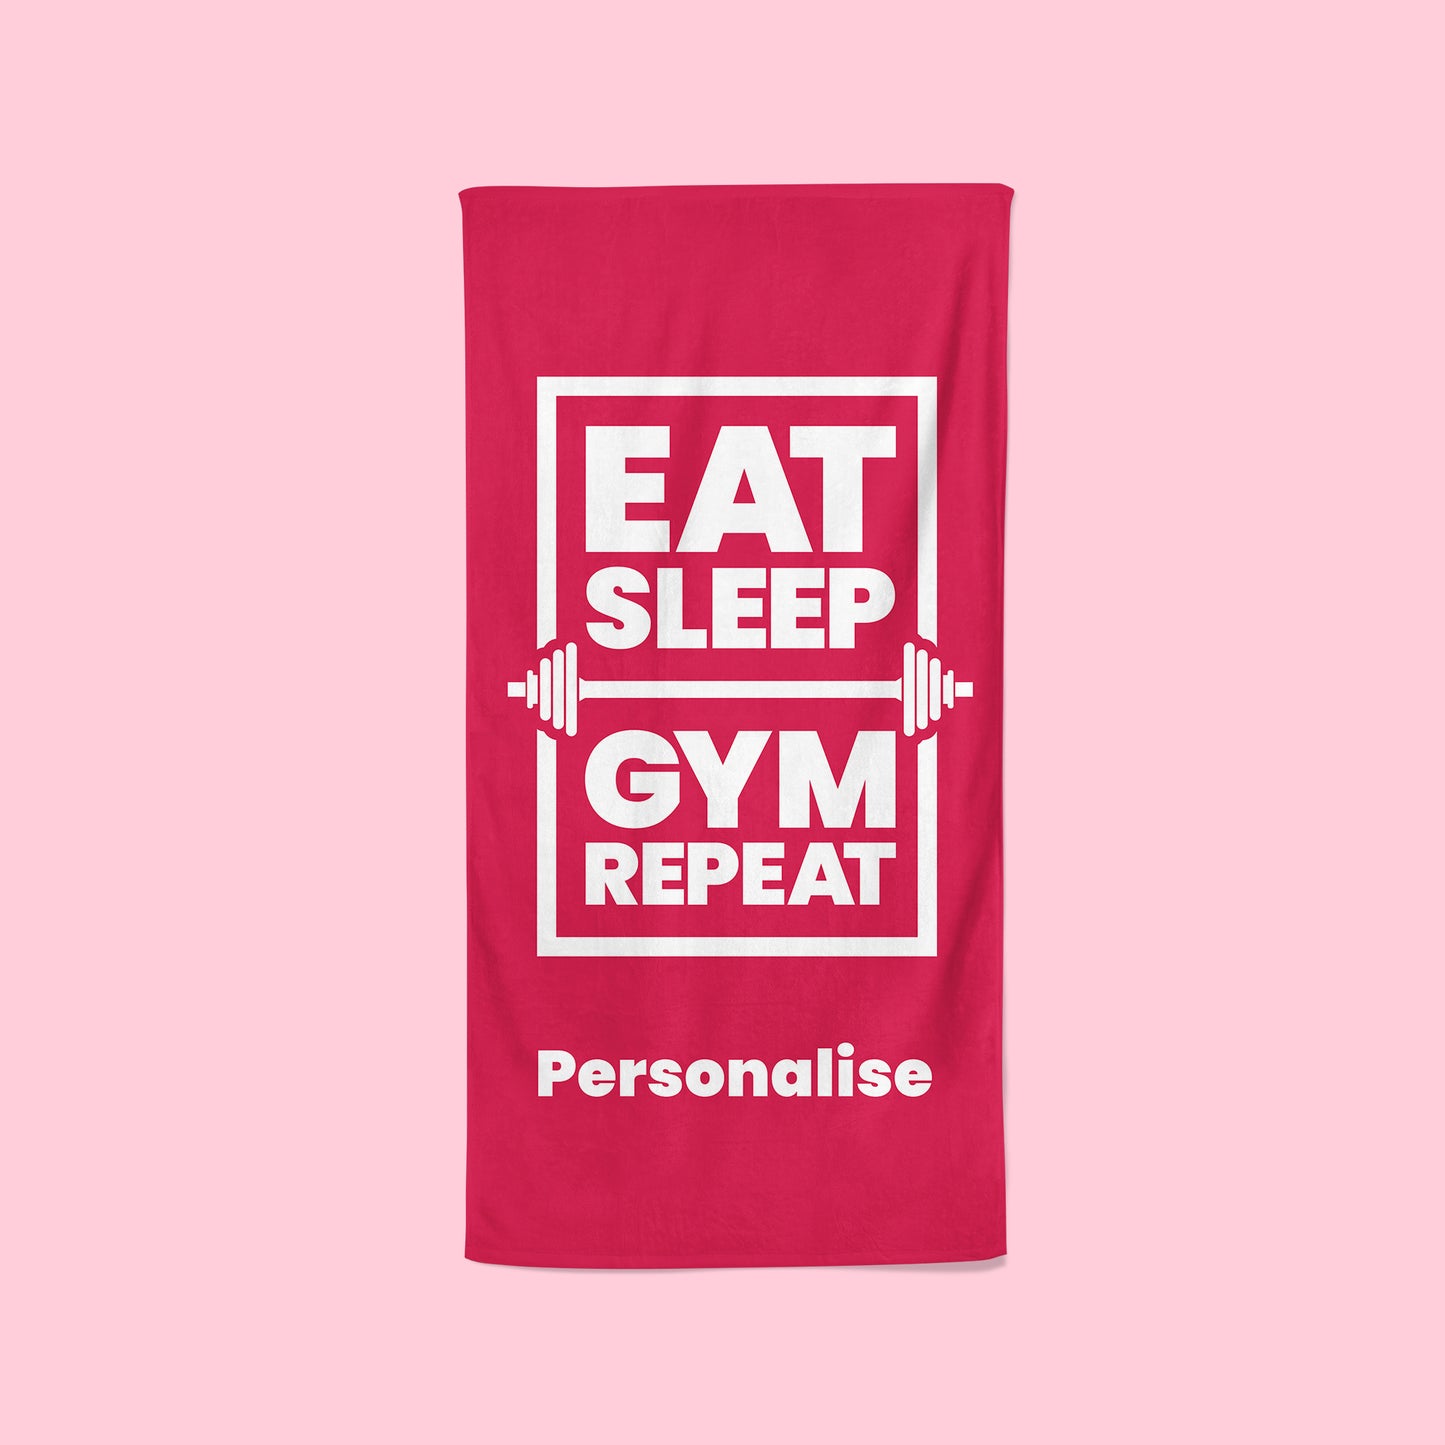 Personalised Pink Gym Towel - Eat, Sleep, Gym, Repeat!